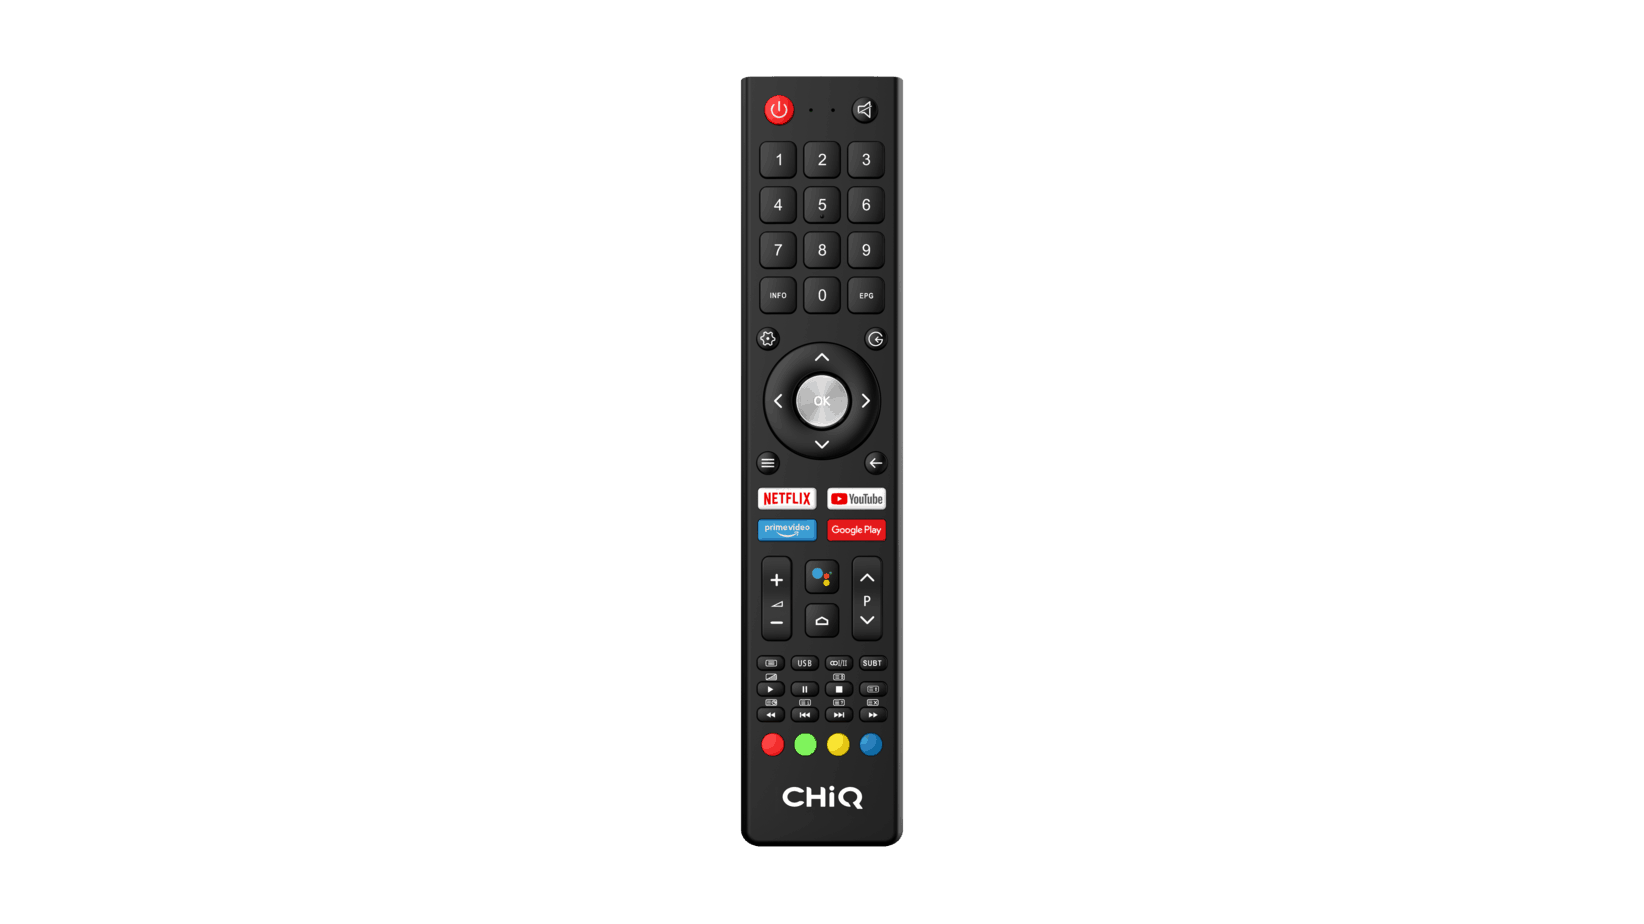  Fernbedienung des KAGIS 55 Zoll 4K UHD Smart
                                    TV - Netflix, Prime Video, Google Play & Youtube Schnellstart Tasten, Android Sprachassistent Taste - TESTBERICHT